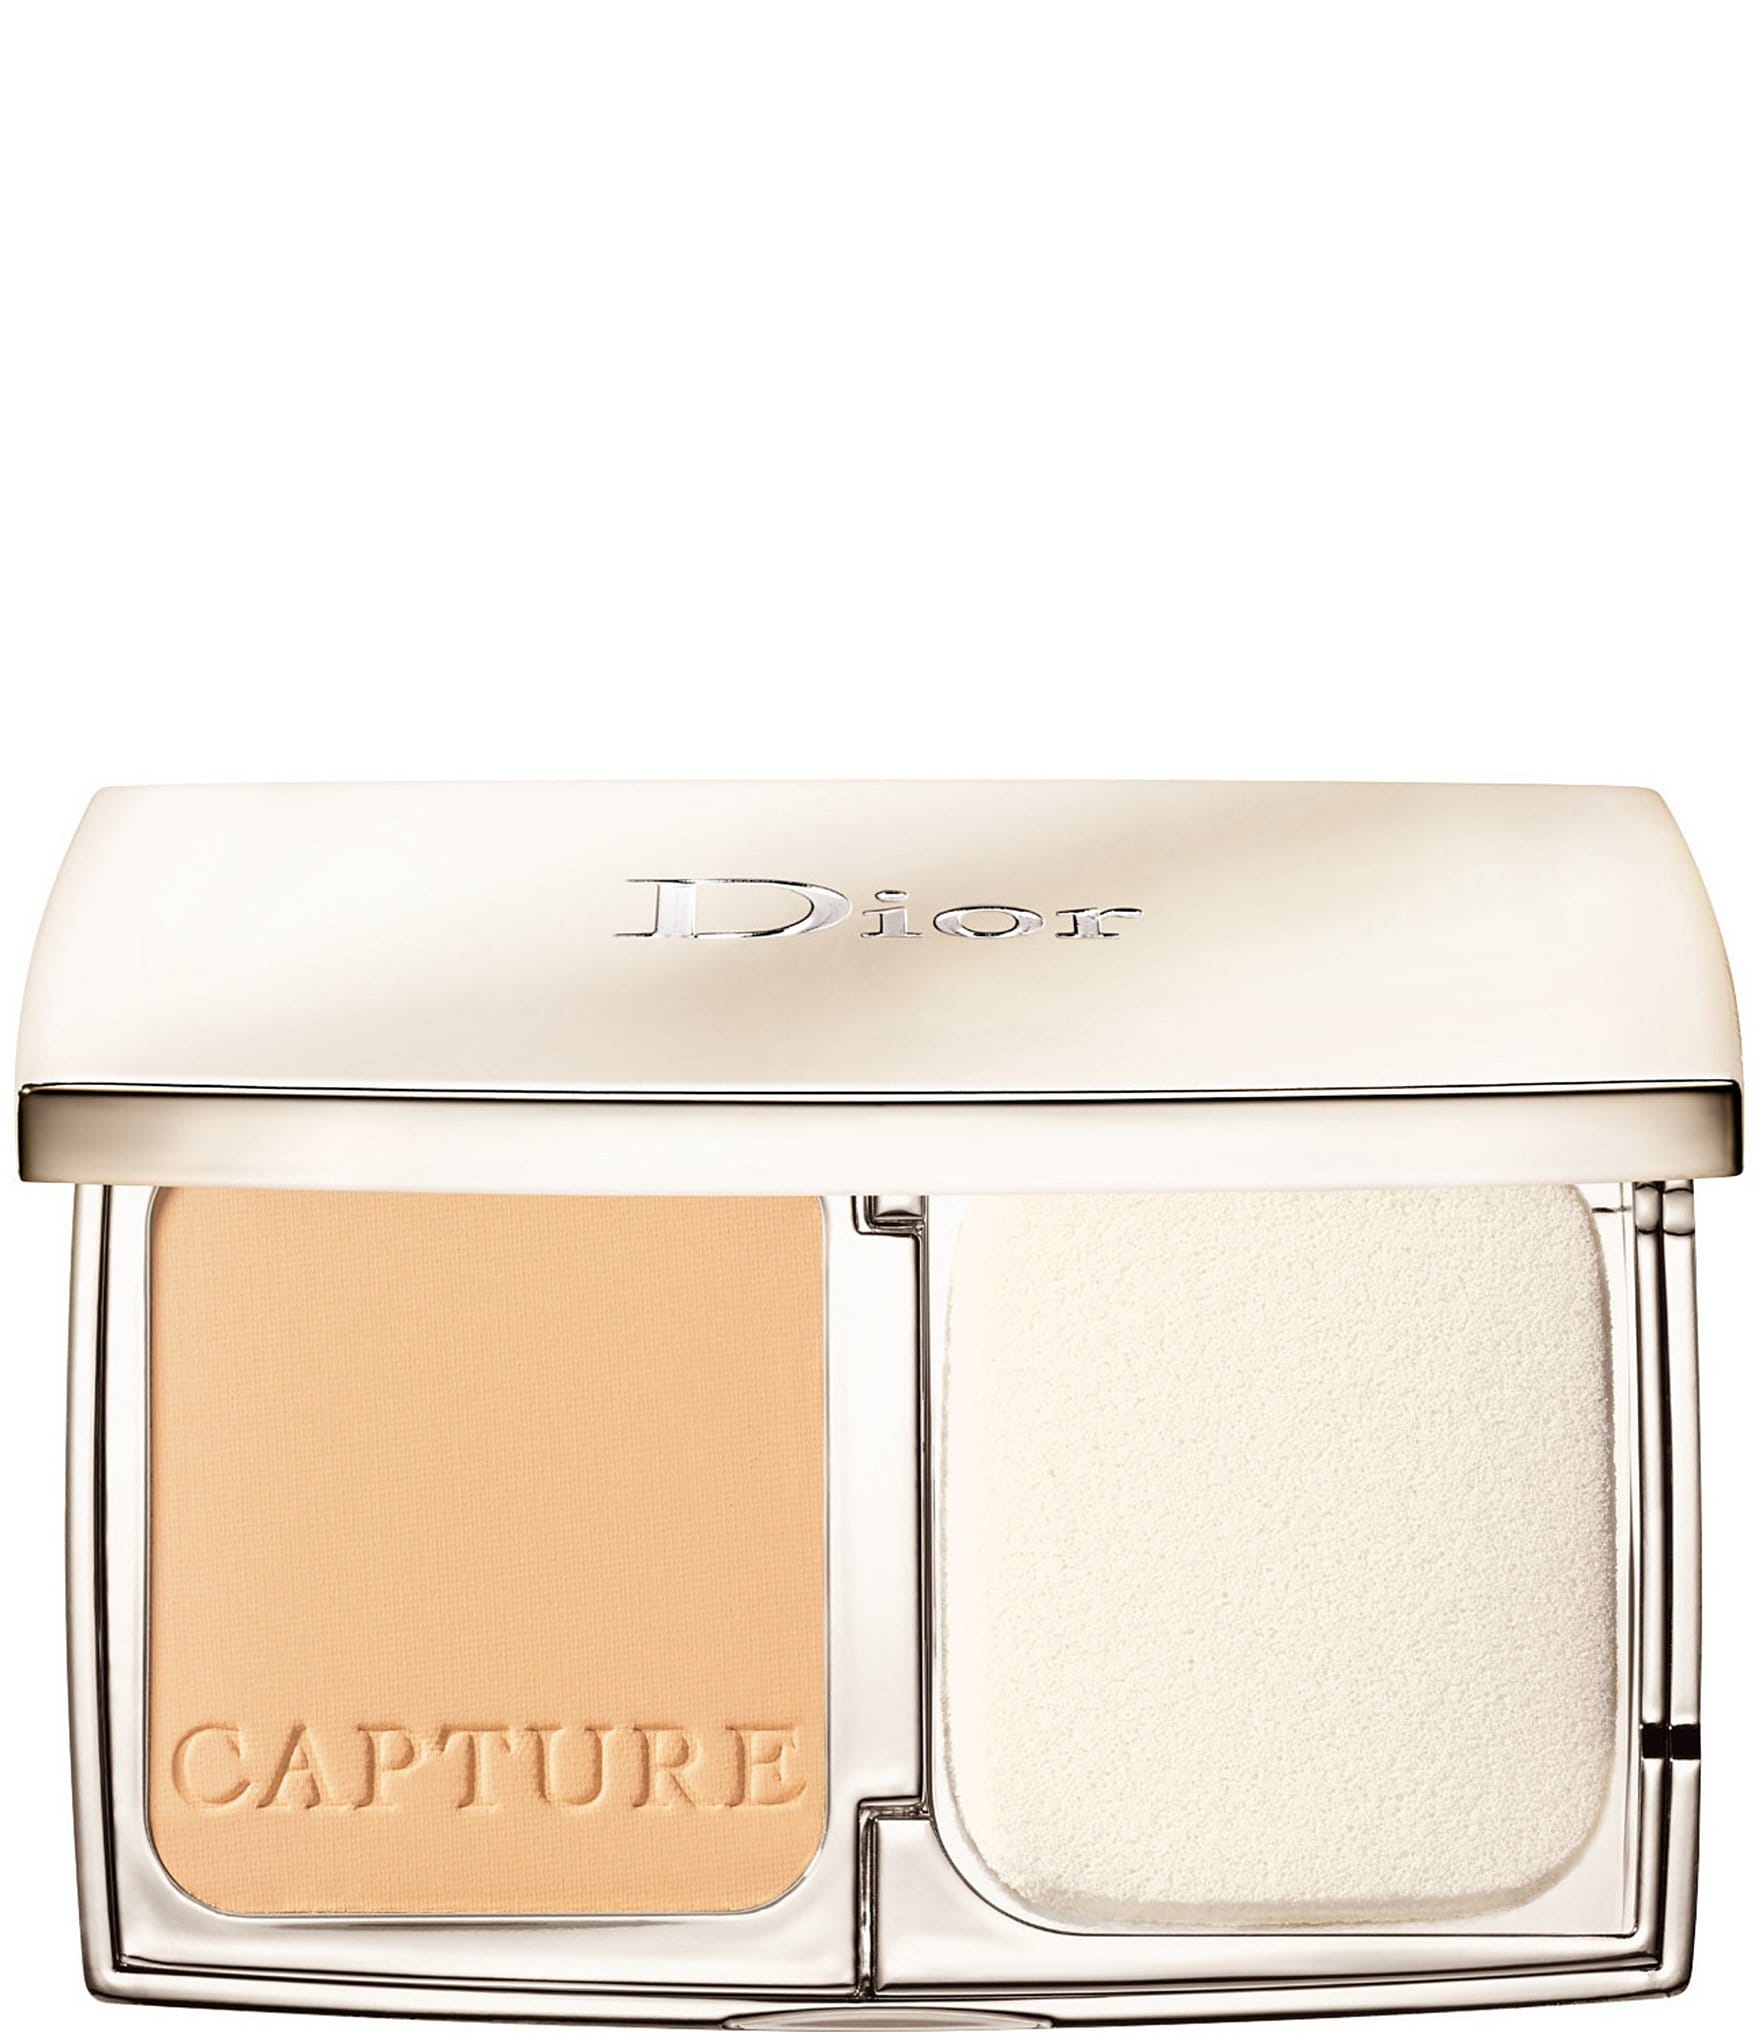 DIOR FOREVER CUSHION POWDER  UltraFine Skin Fresh Loose Powder  Lon   Dior Beauty Online Boutique Malaysia